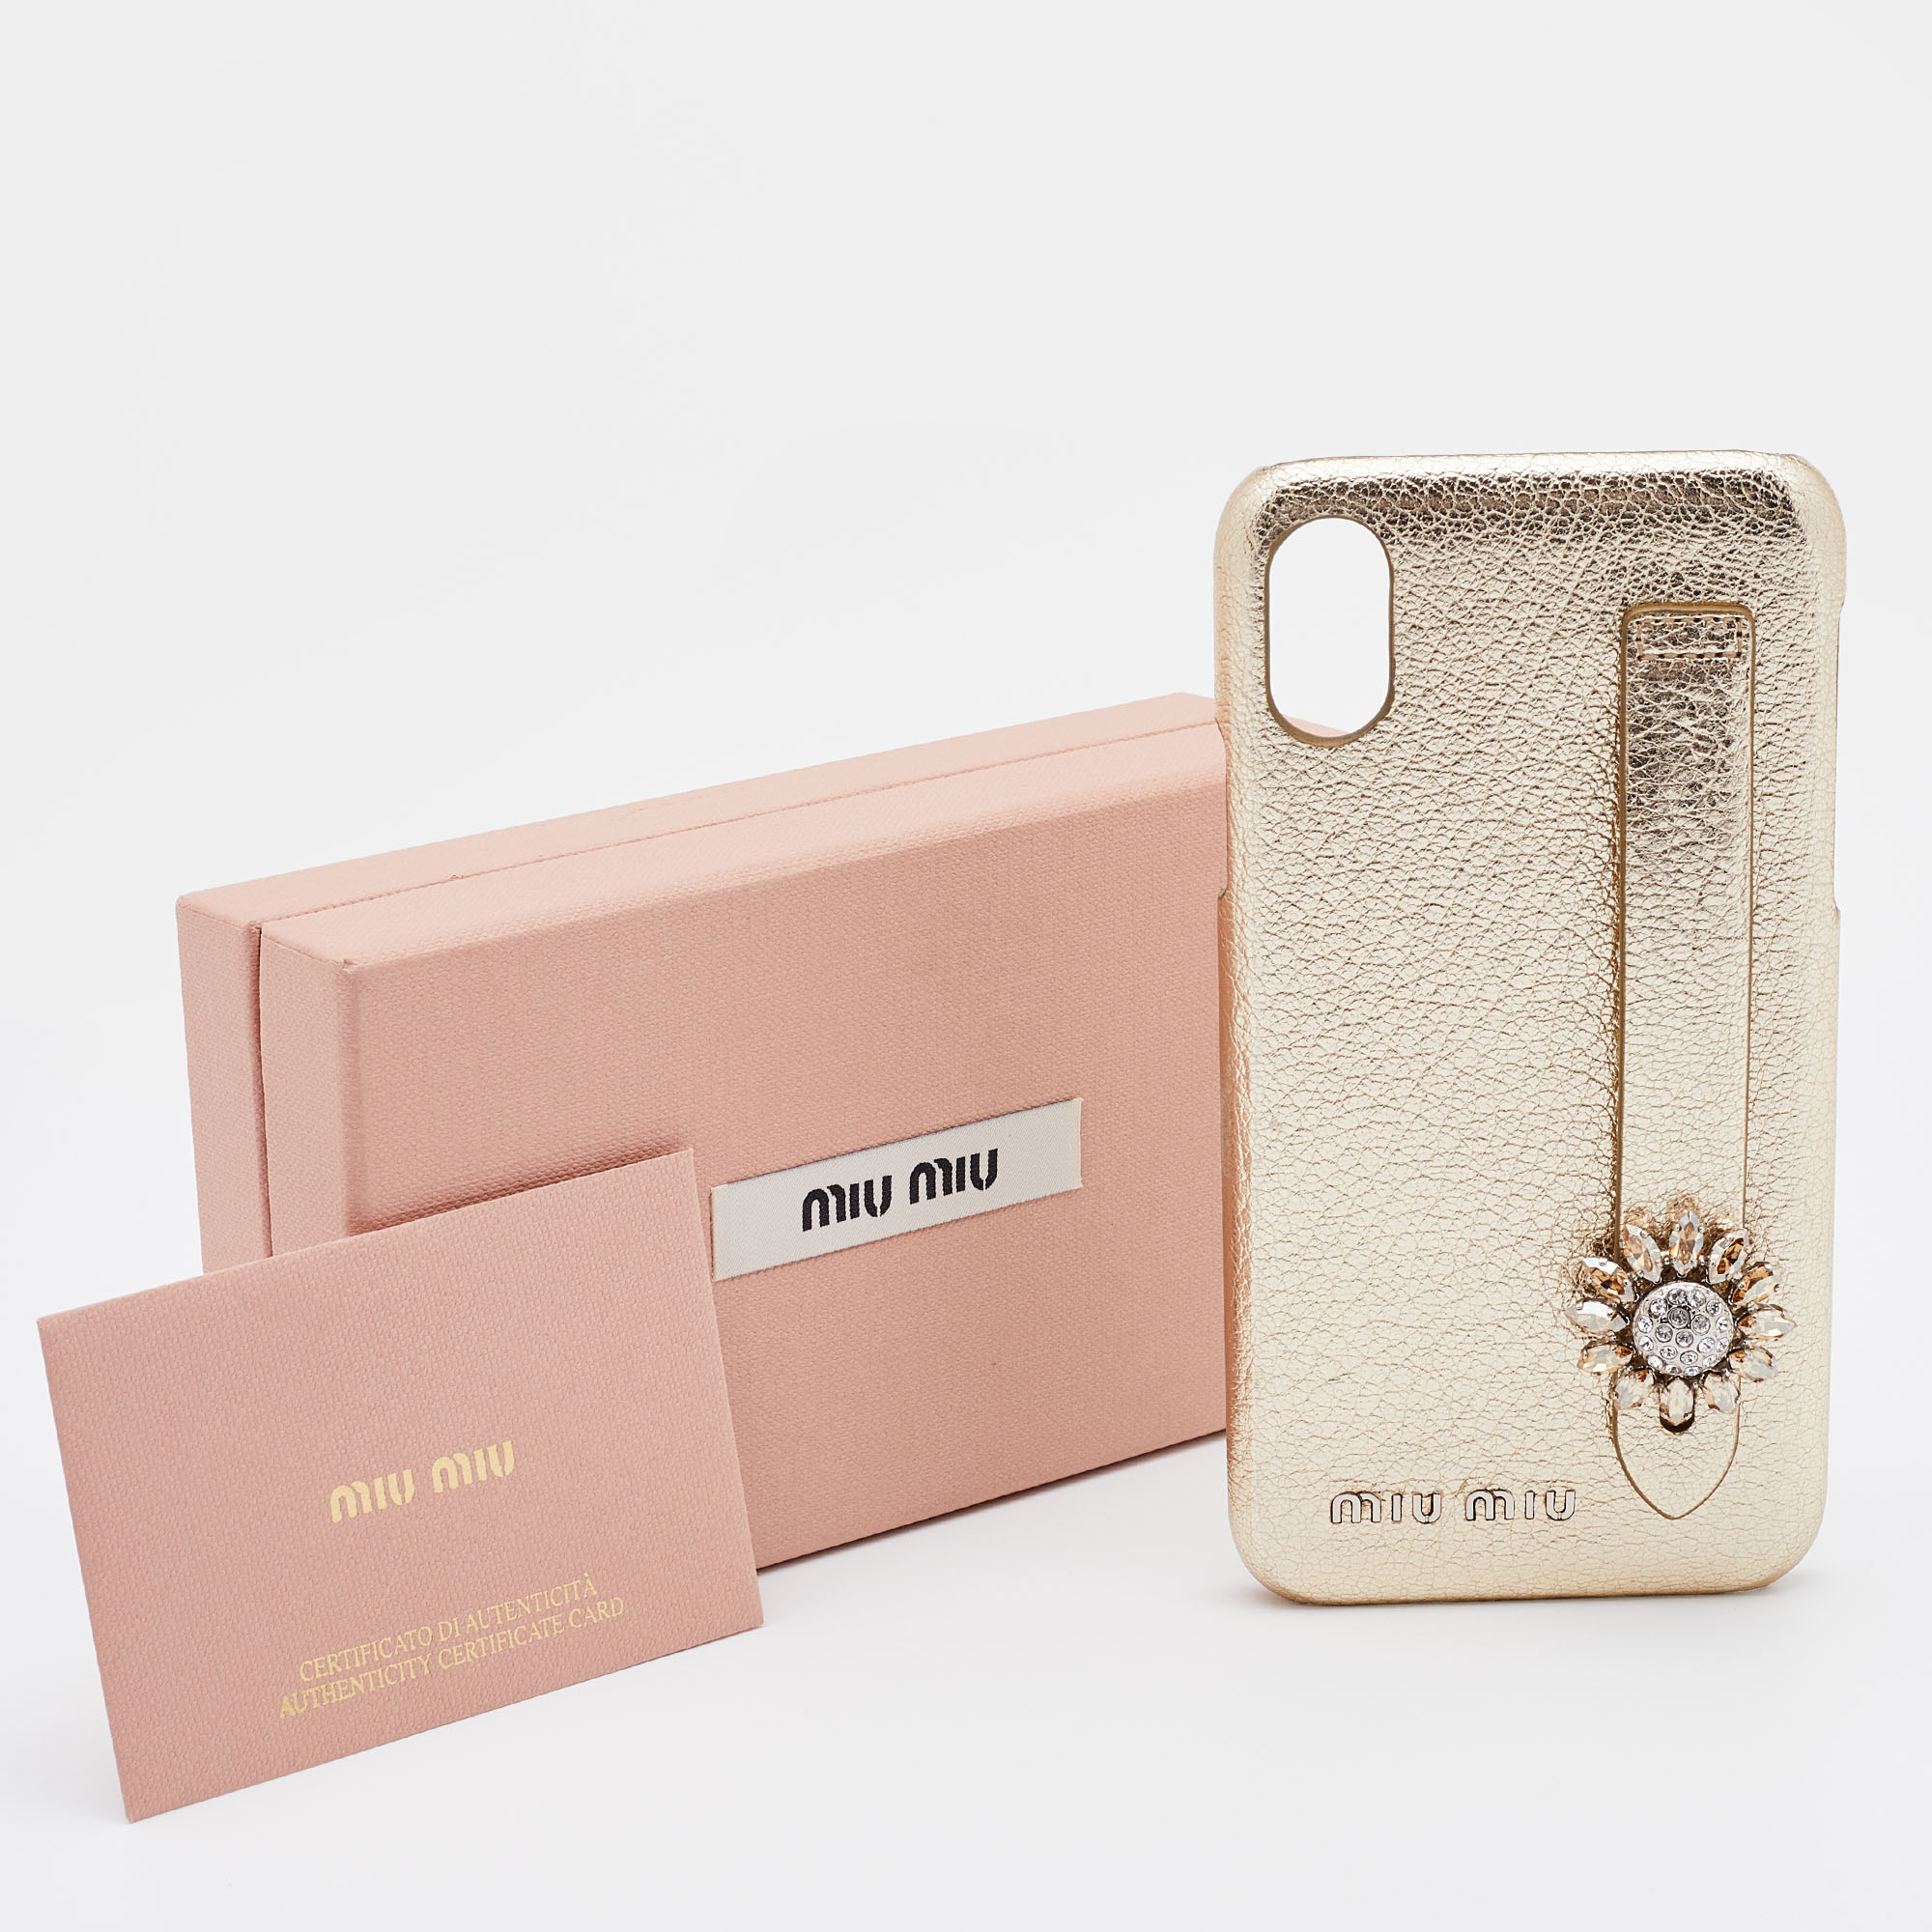 Miu Miu Gold Leather IPhone X / XS Cover